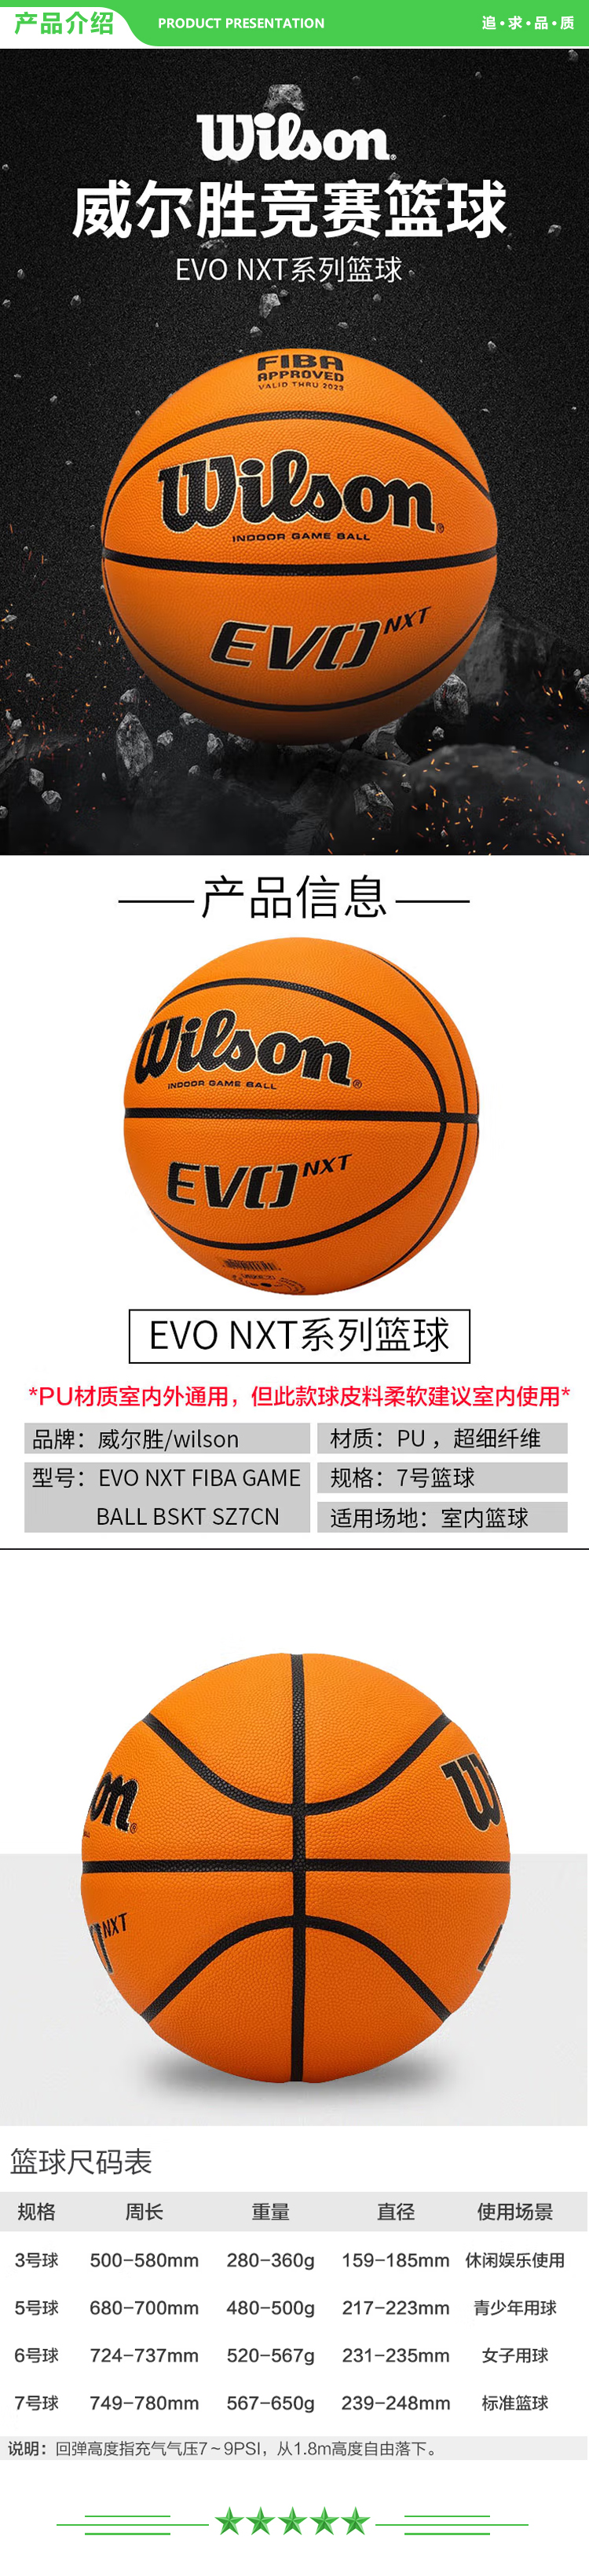 威尔胜 Wilson WTB0965IB07CN 篮球7号球超纤吸湿耐磨训练室内室外比赛专业用球 .jpg